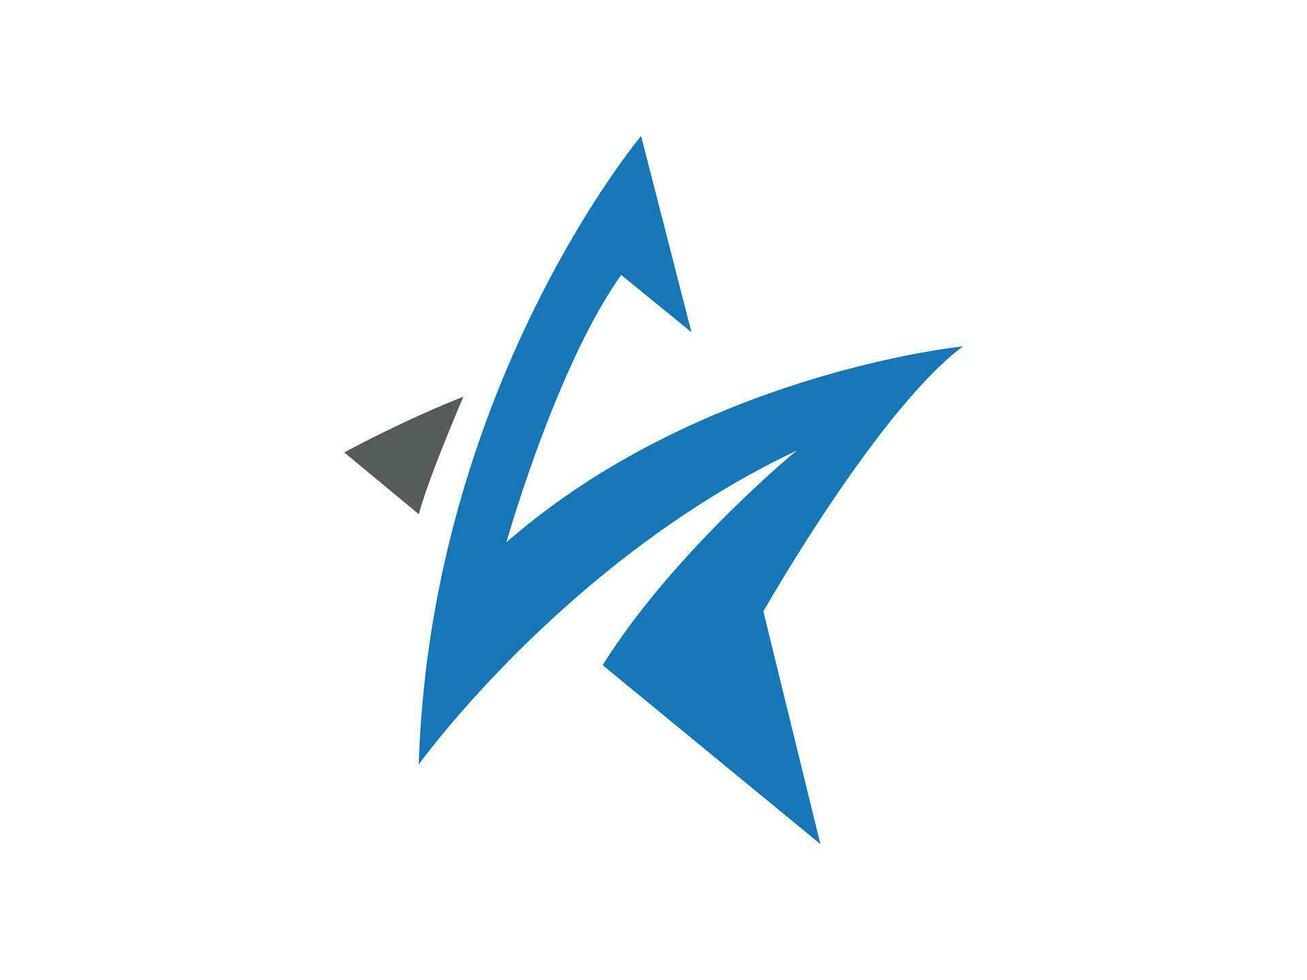 Star creative logo design vector